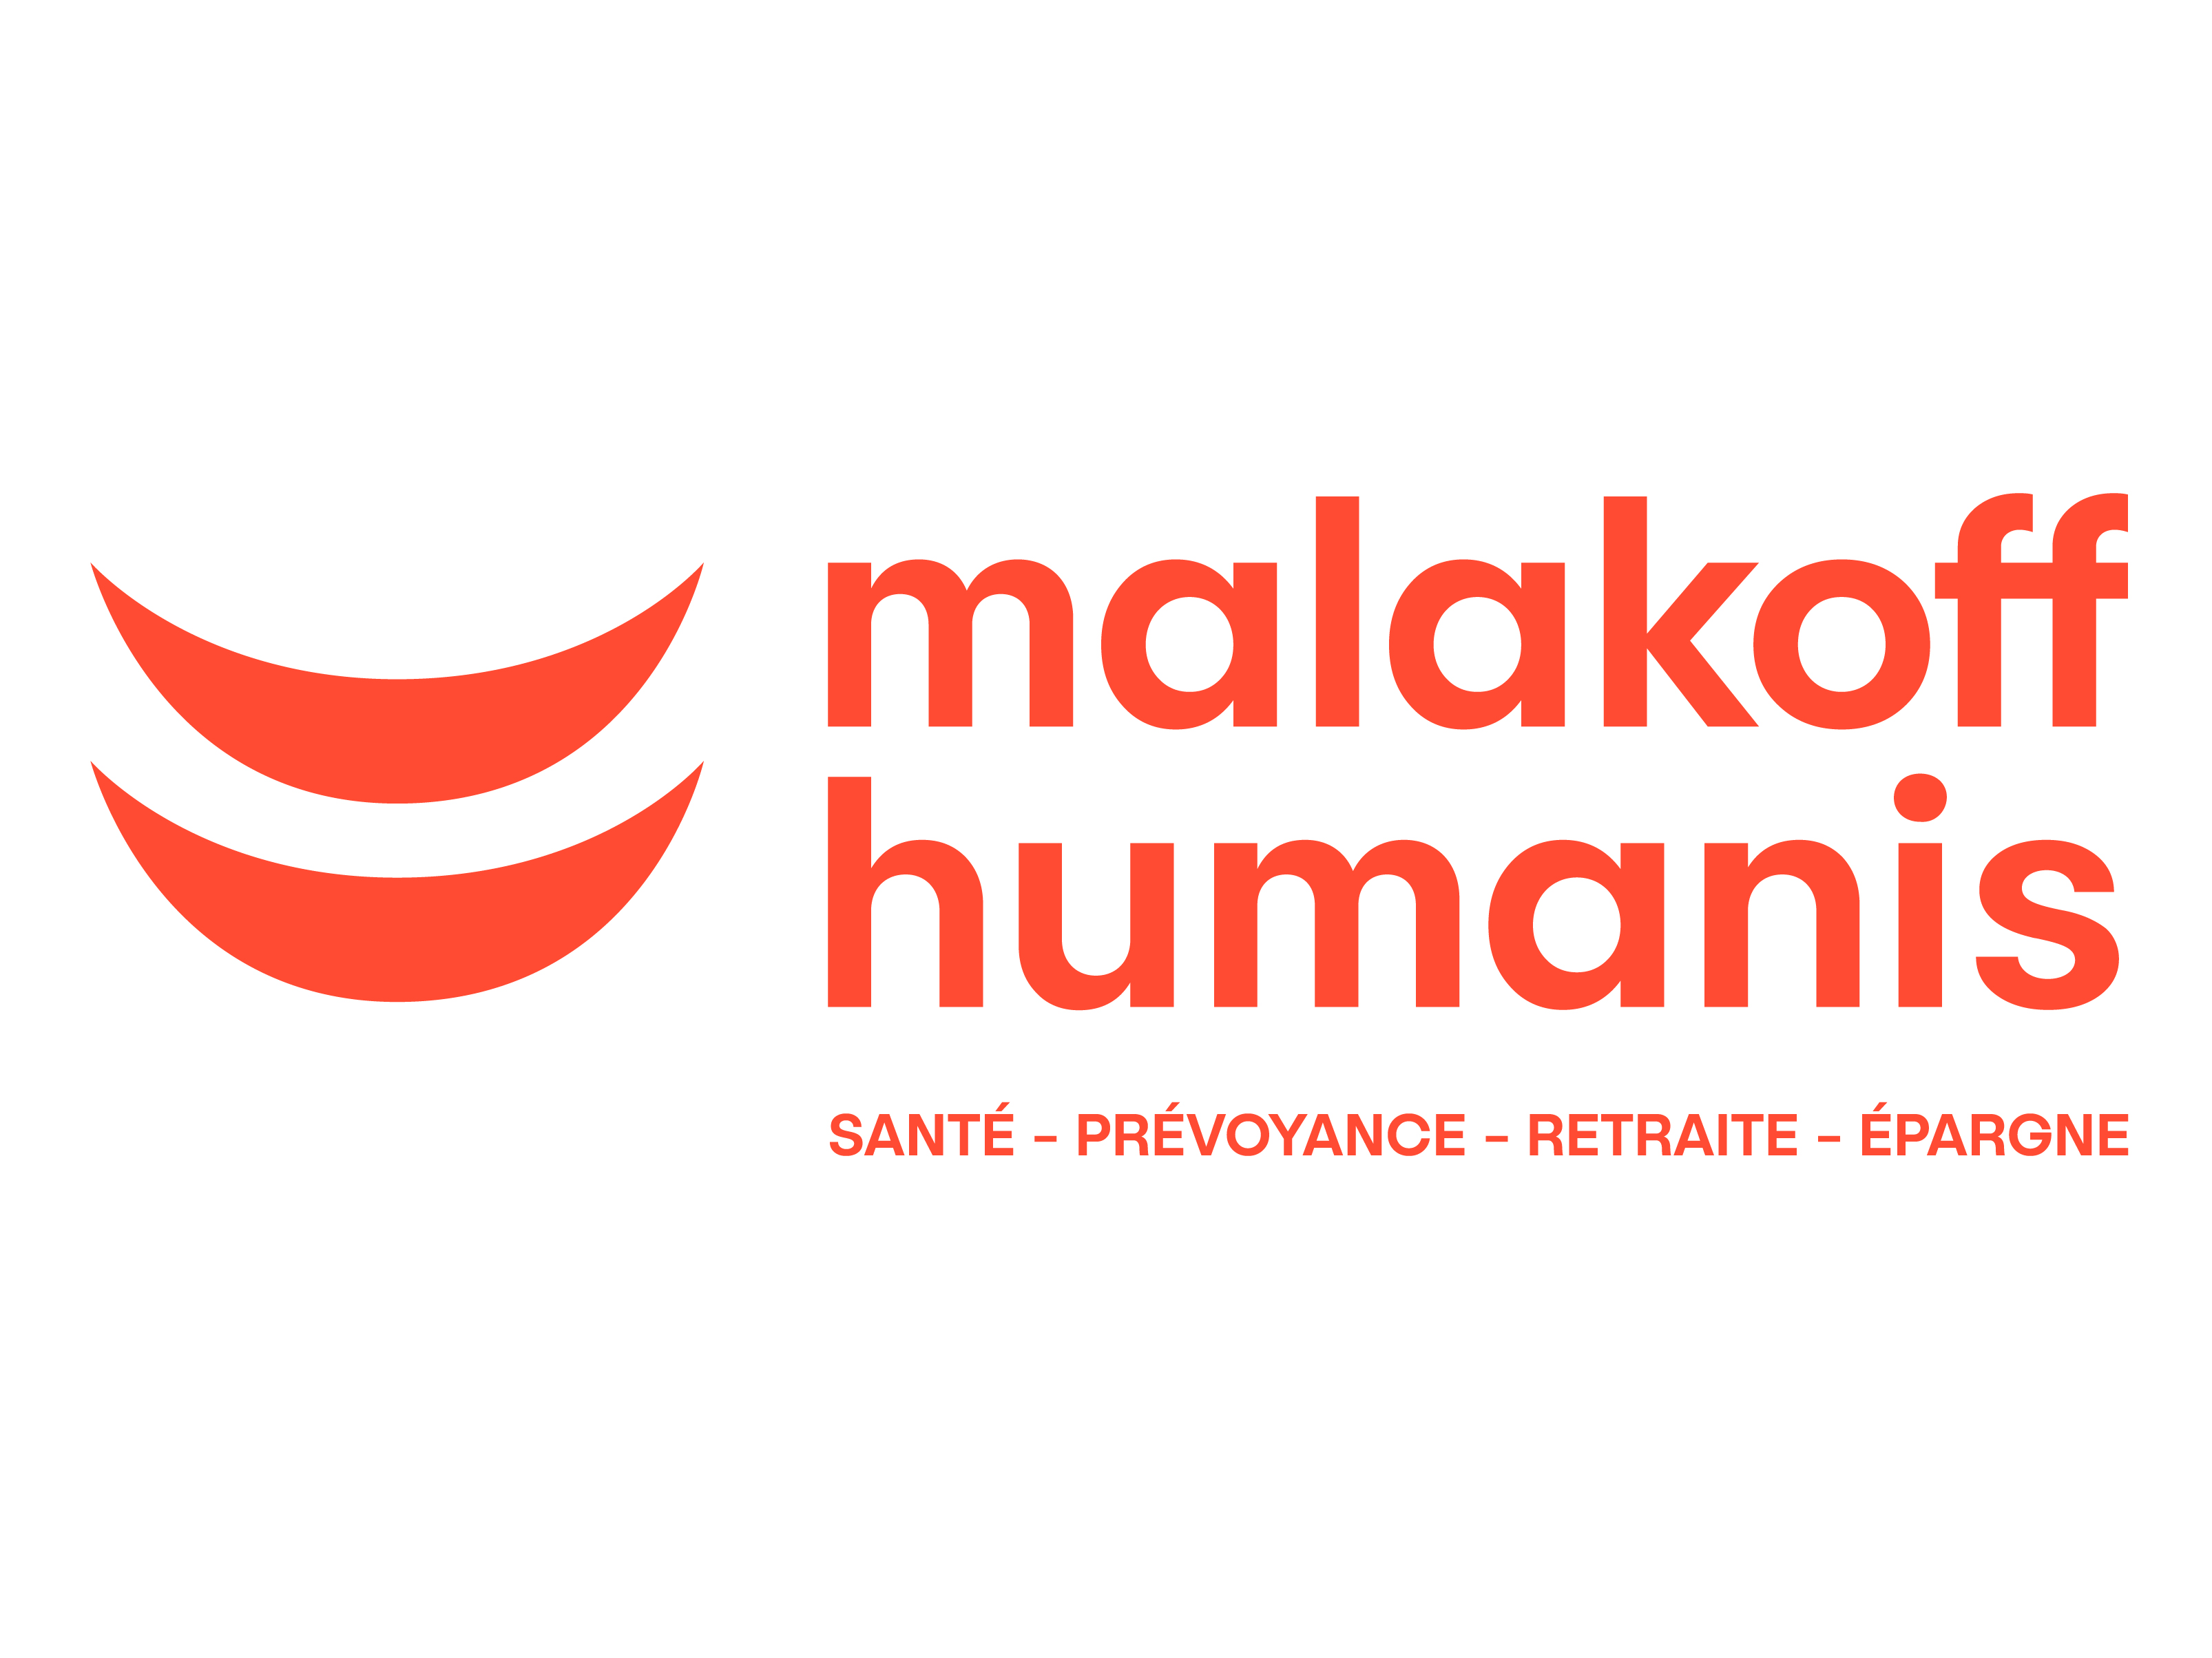 logo-malakoff-humanis